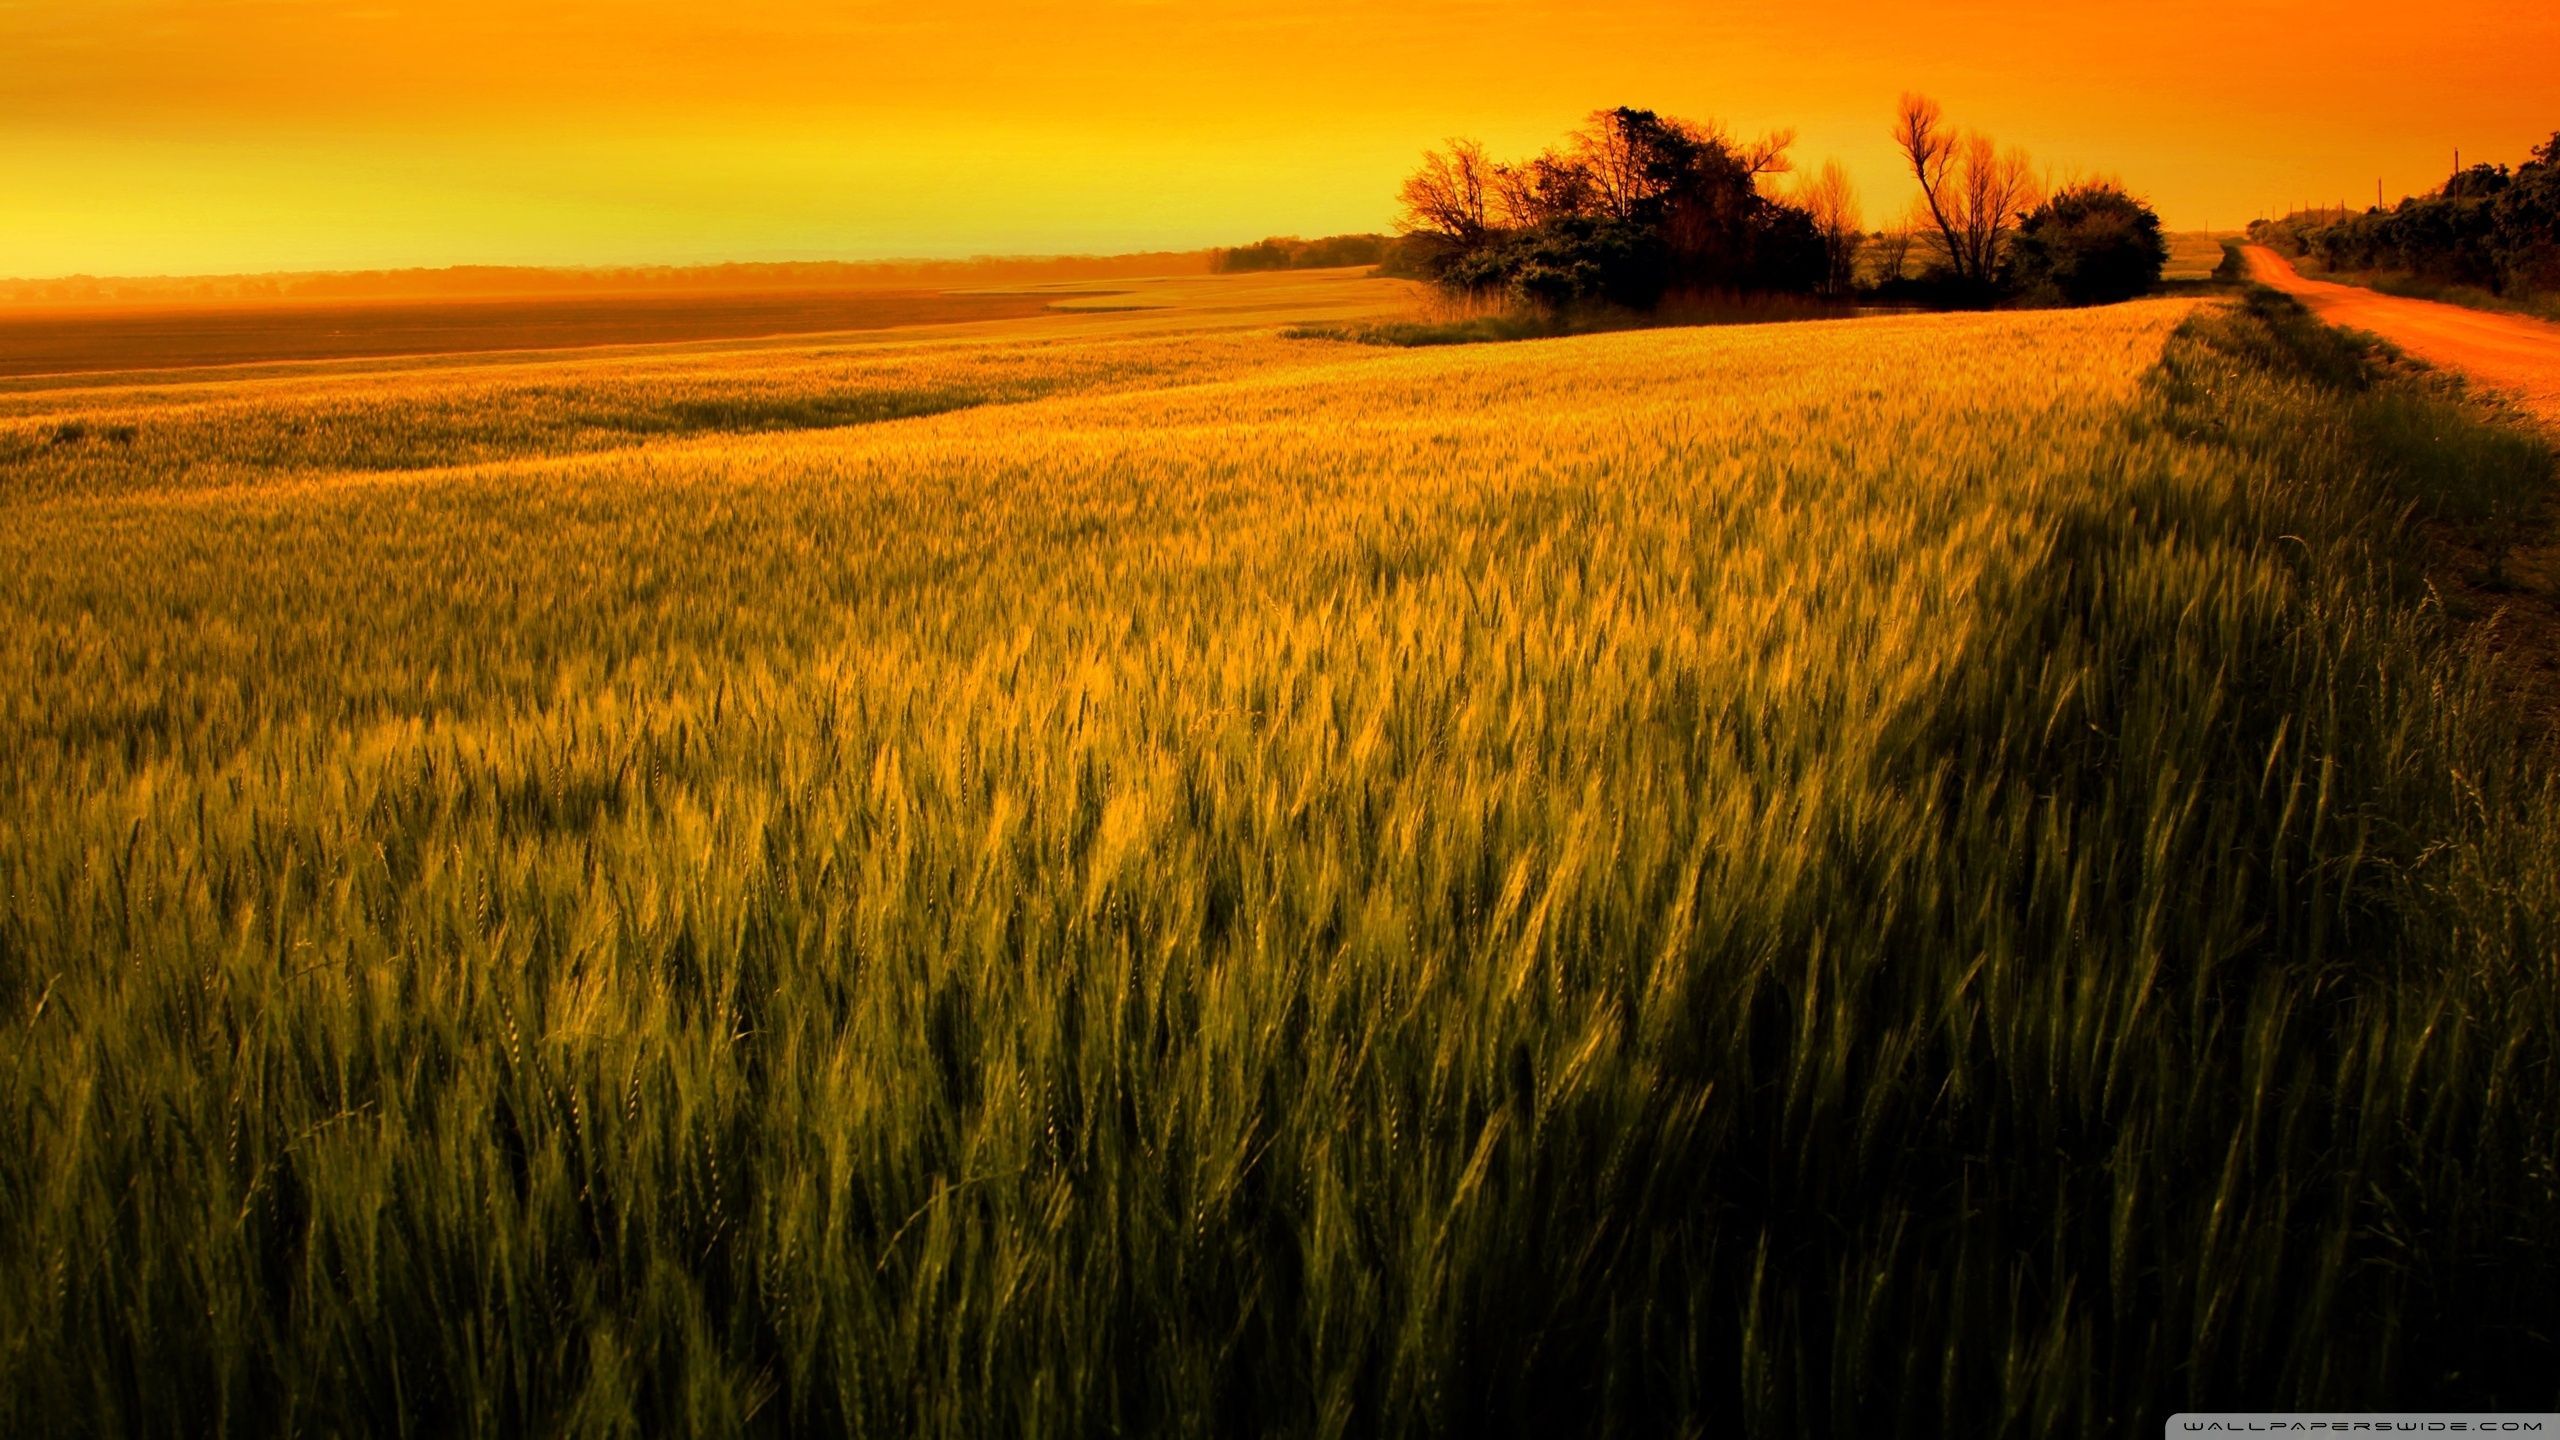 Wheat Field Wallpaper Free Wheat Field Background